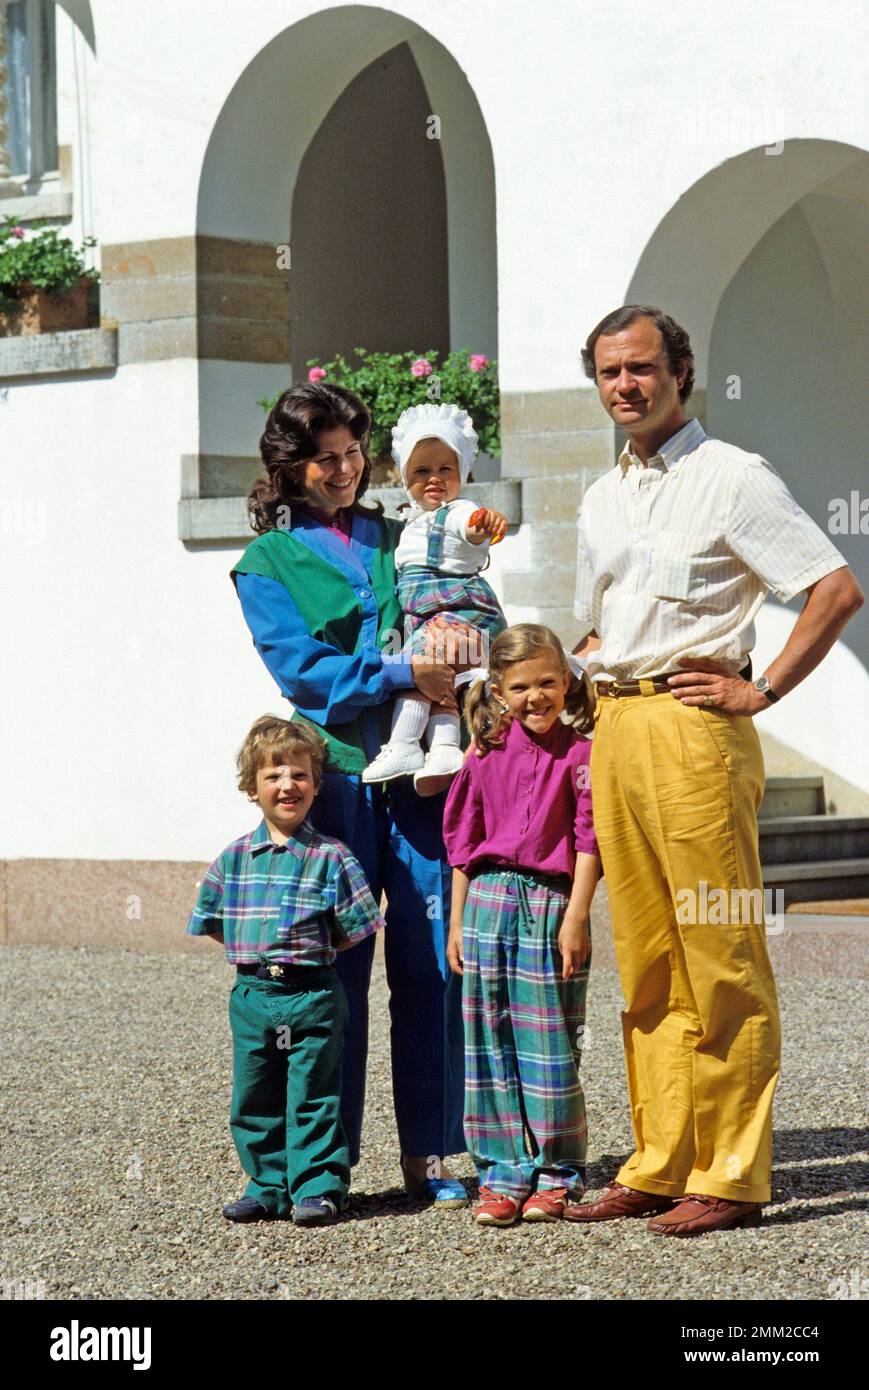 Carl XVI Gustaf, re di Svezia. Nato il 30 aprile 1946. Il re Carlo XVI Gustaf Regina Silvia i loro figli, principessa Madeleine, principessa corona Victoria, principe Carl Philip, nella foto al castello di Solliden Öland in occasione delle celebrazioni per il compleanno di Victorias 1983. Foto Stock